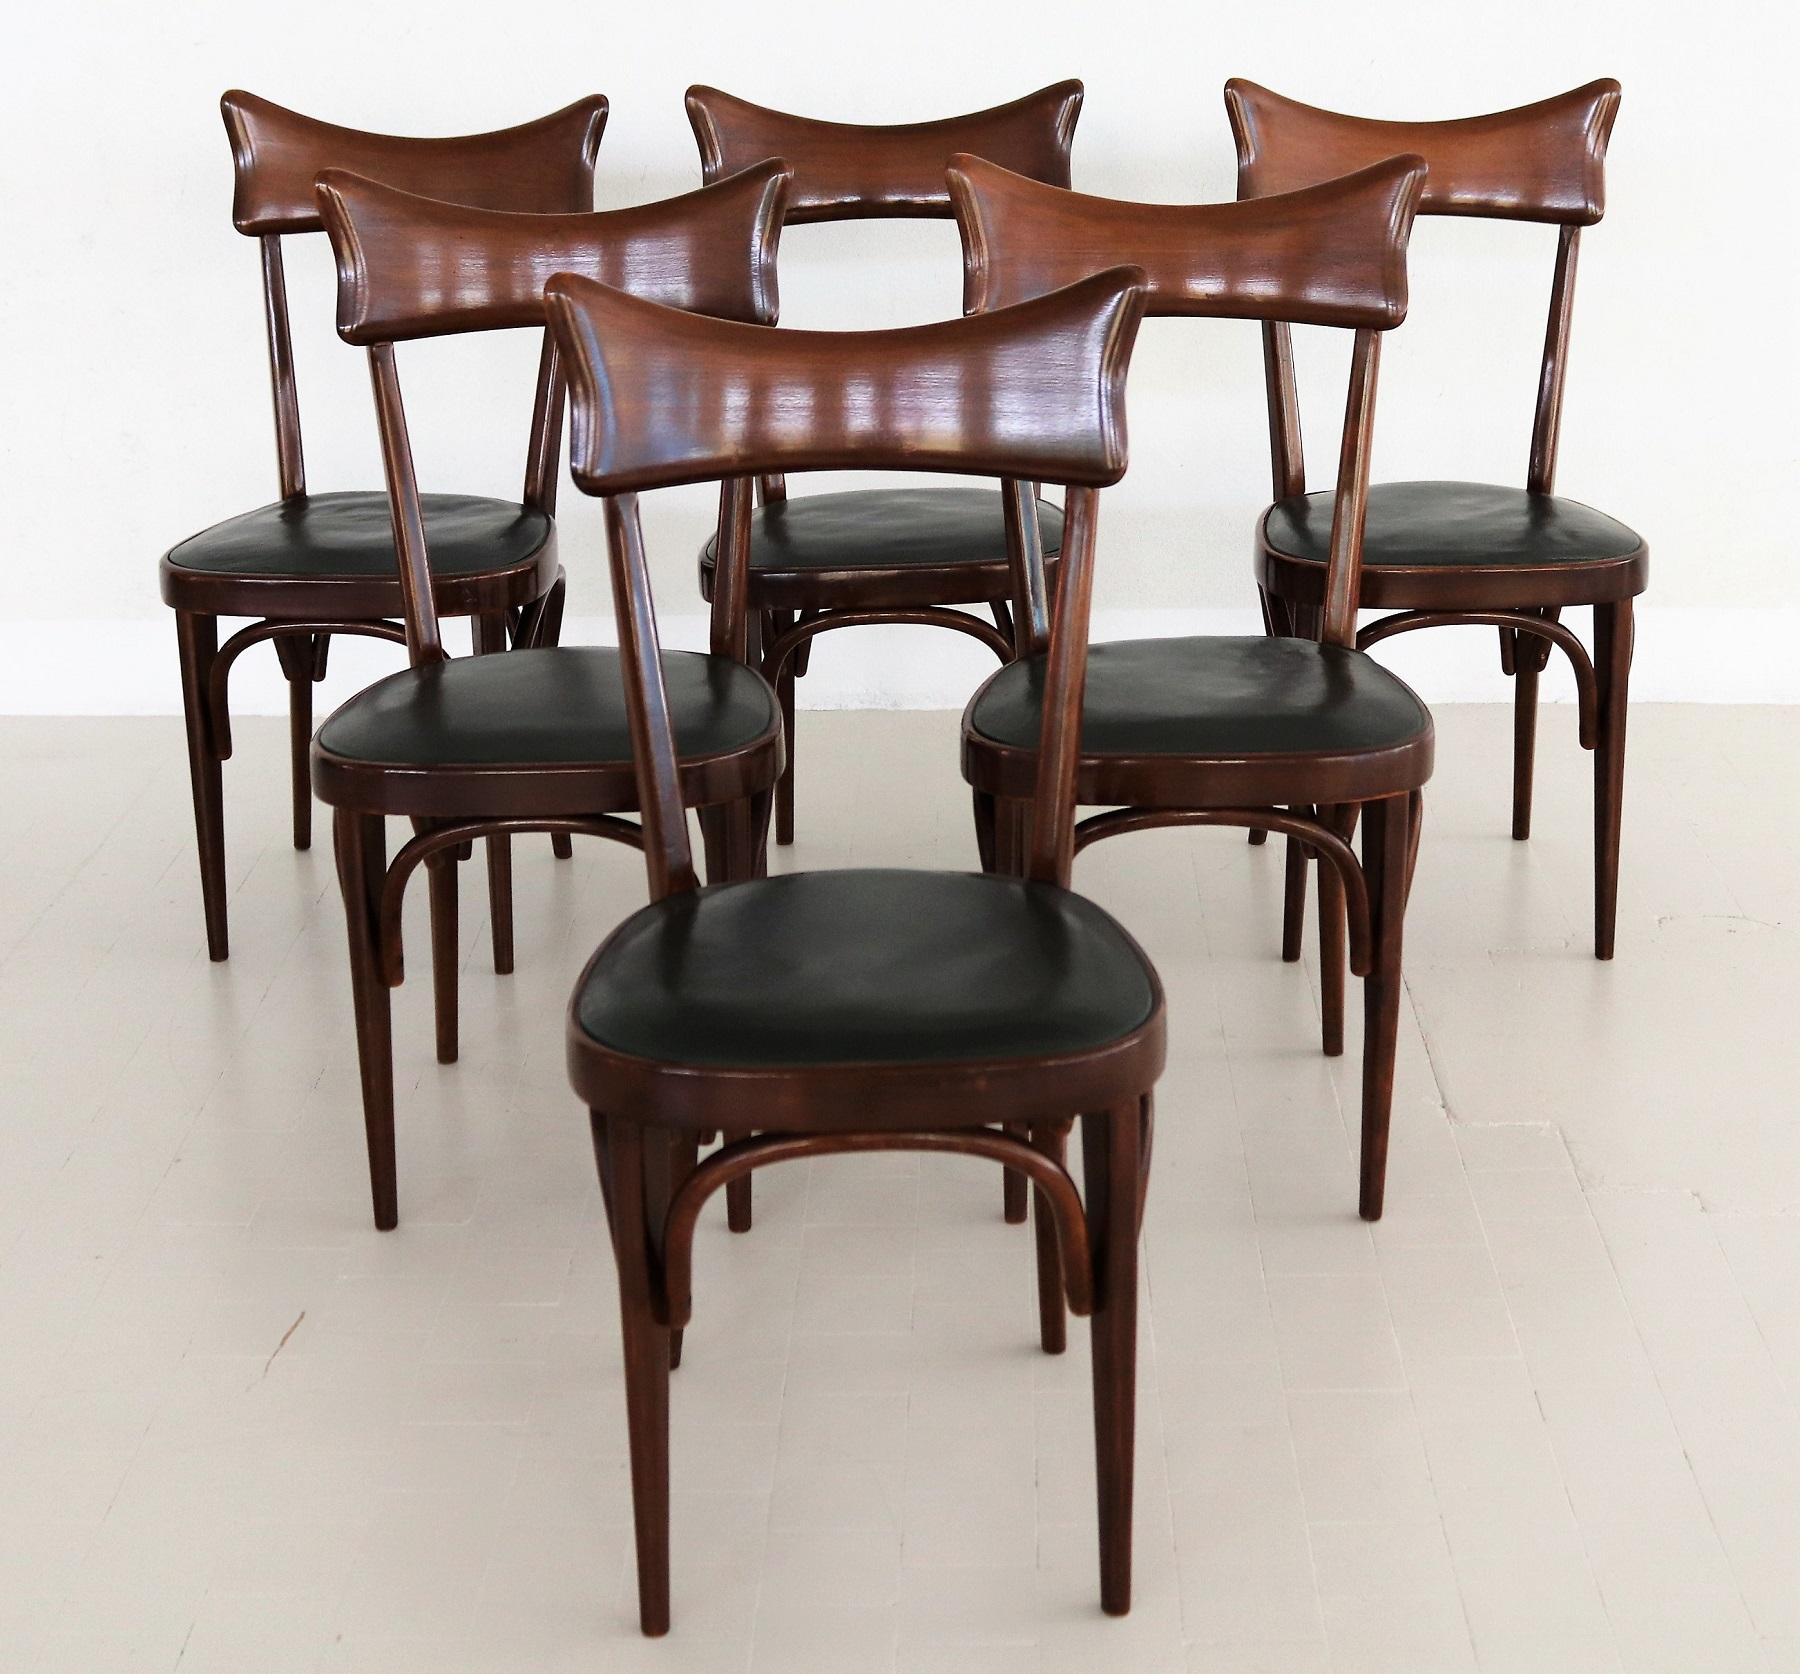 Magnifique ensemble original de six chaises de salle à manger fabriquées en Italie dans les années 1950.
Dans le style d'Ico Parisi.
Les chaises sont en bois de hêtre teinté foncé (acajou) et sont dans leur état original et sec. Pas vermoulu, et pas